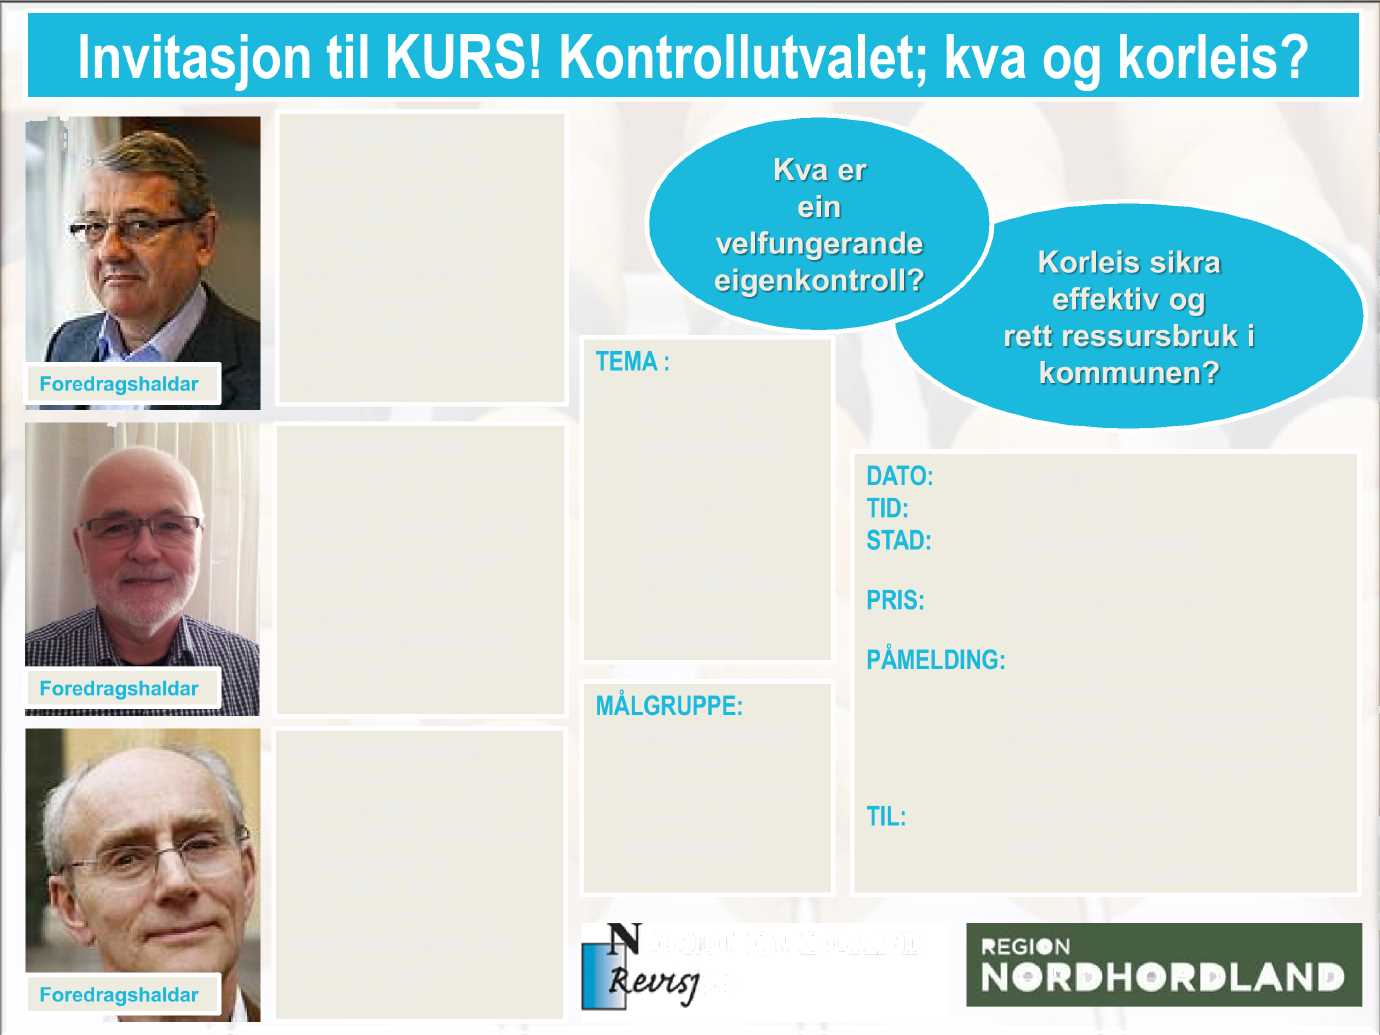 Invitasjon til KU RS! Kontrollutvalet ; kva og korleis? Foredragshaldar Foredragshaldar Foredragshaldar Per - Kristian Foss er riksrevisor i Noreg.